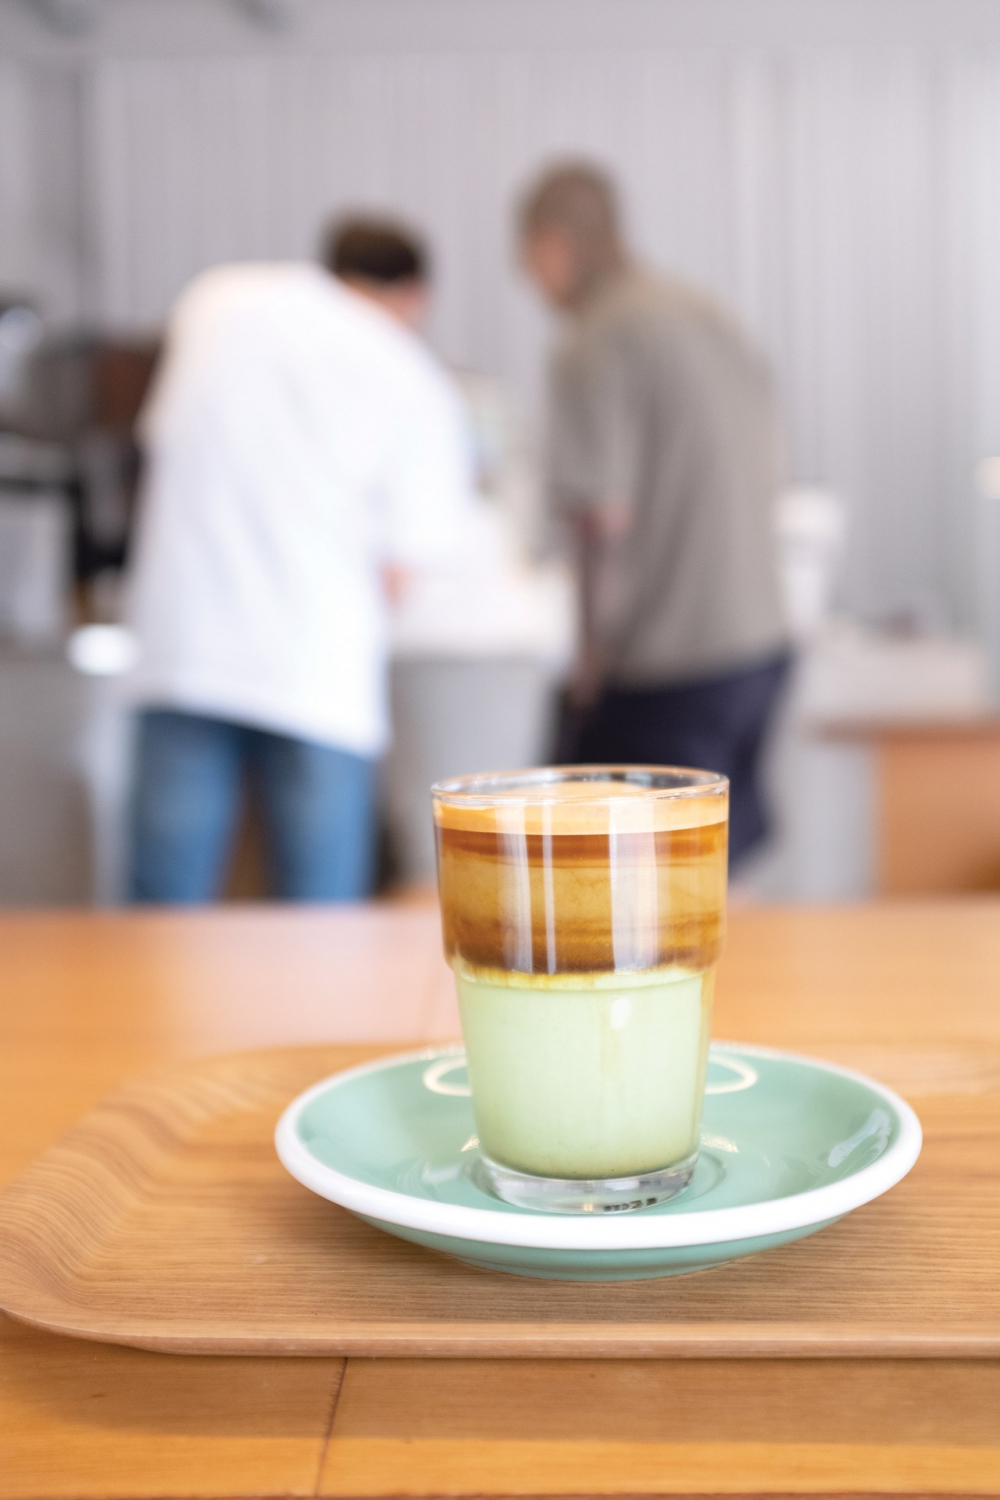 Zöldtea eszpresszó latte a February roasters (이월로스터스) nevű helyen